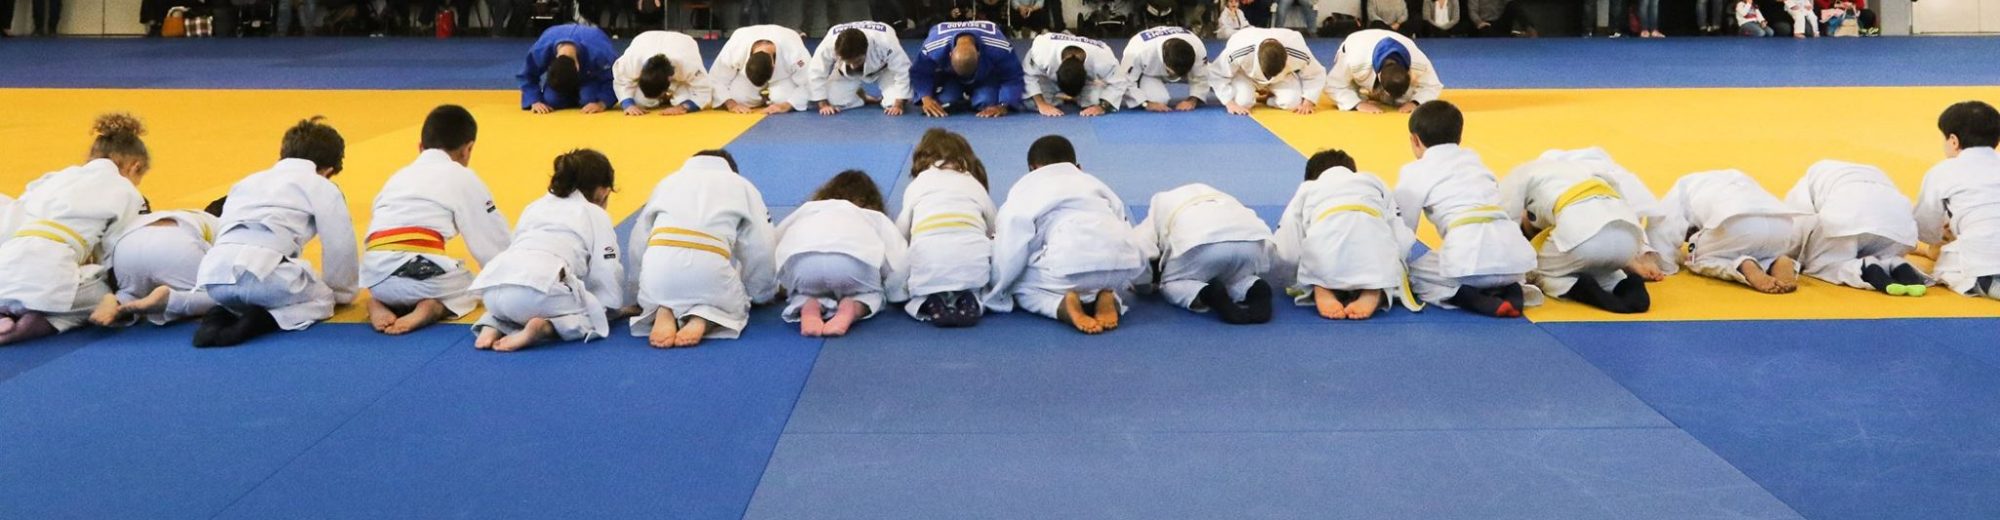 Clube de Judo Hajime